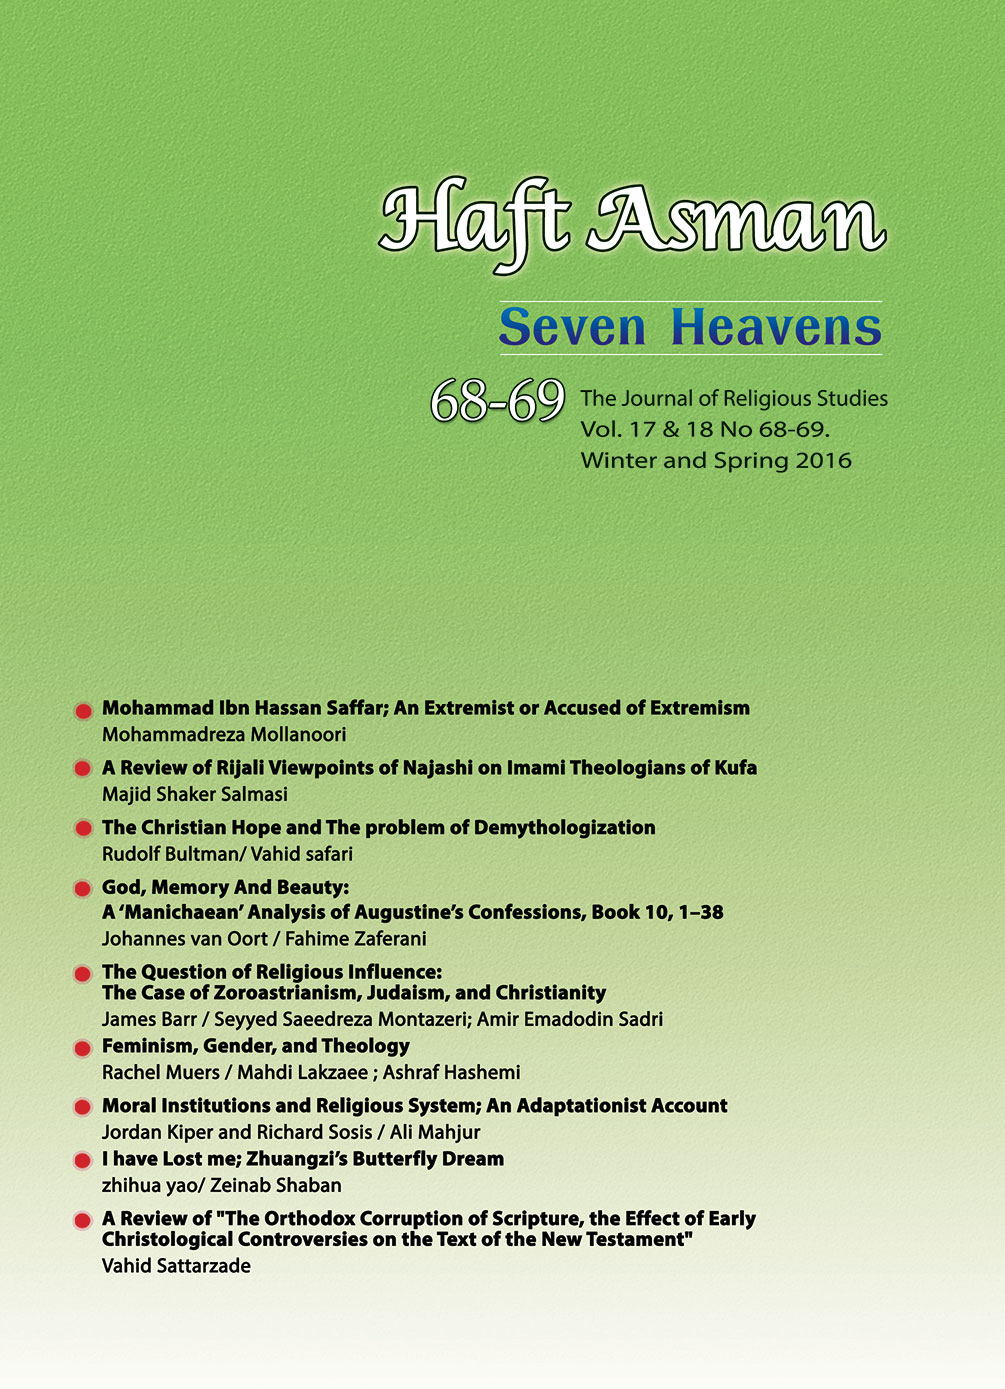 Journal of Seven Heavens